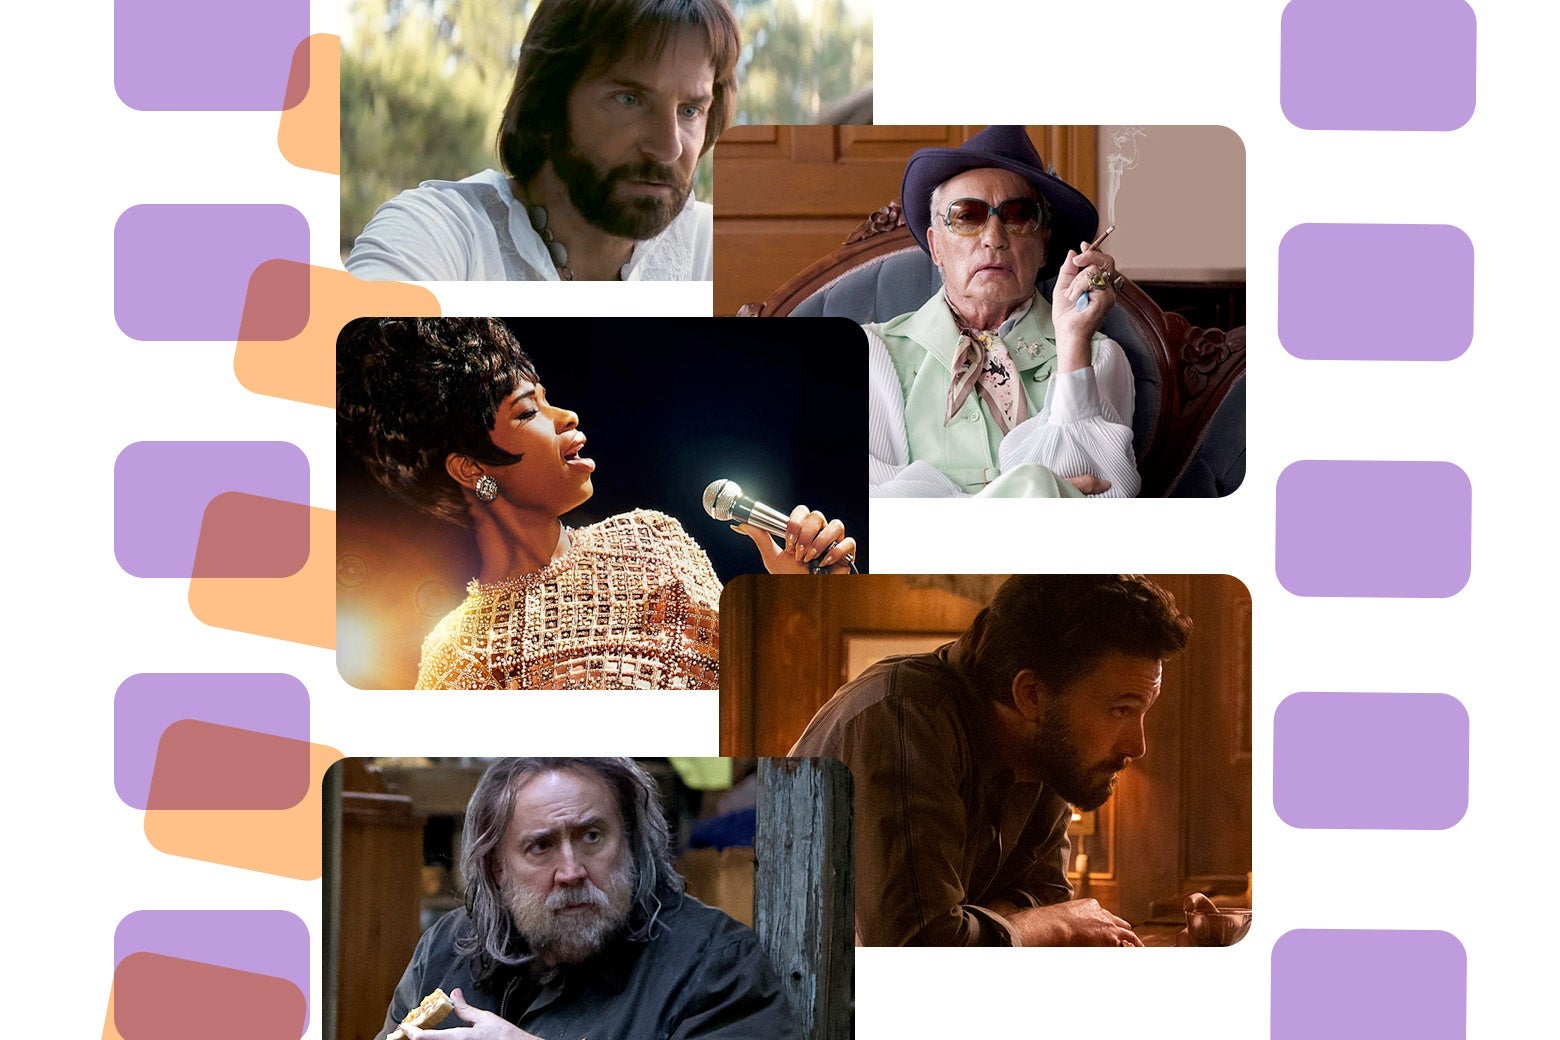 Bradley Cooper in Licorice Pizza, Udo Kier in Swan Song, Jennifer Hudson in Respect, Ben Affleck in The Tender Bar, Nicolas Cage in Pig.